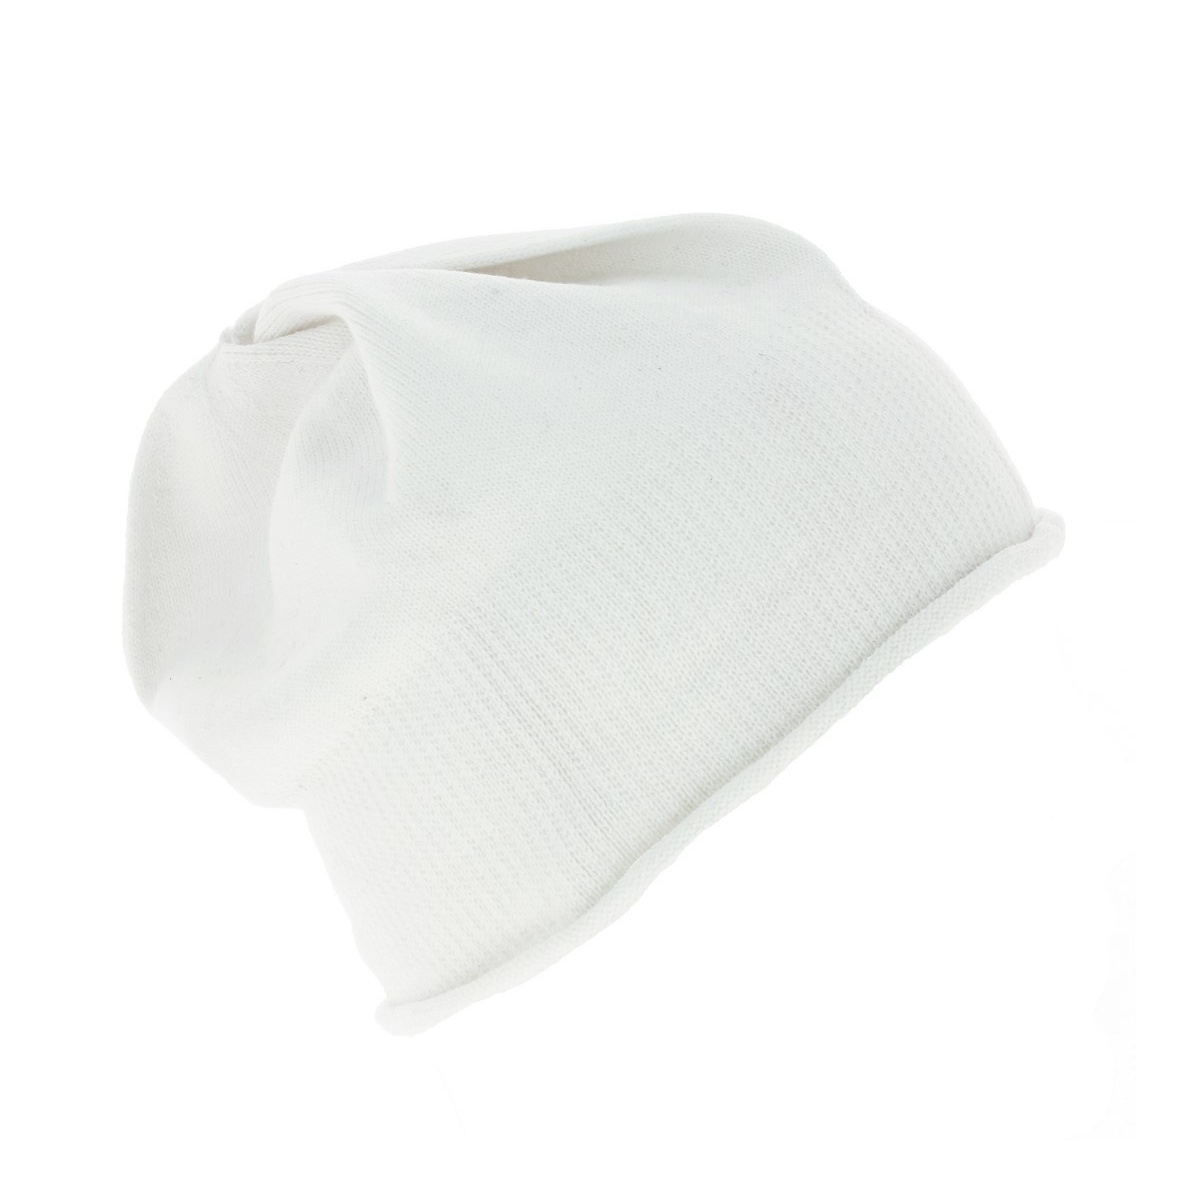 Bonnet de nuit blanc avec pompon Style traditionnel doux adulte hommes  femmes Scrooge chapeau de couchage bonnet de nuit -  France